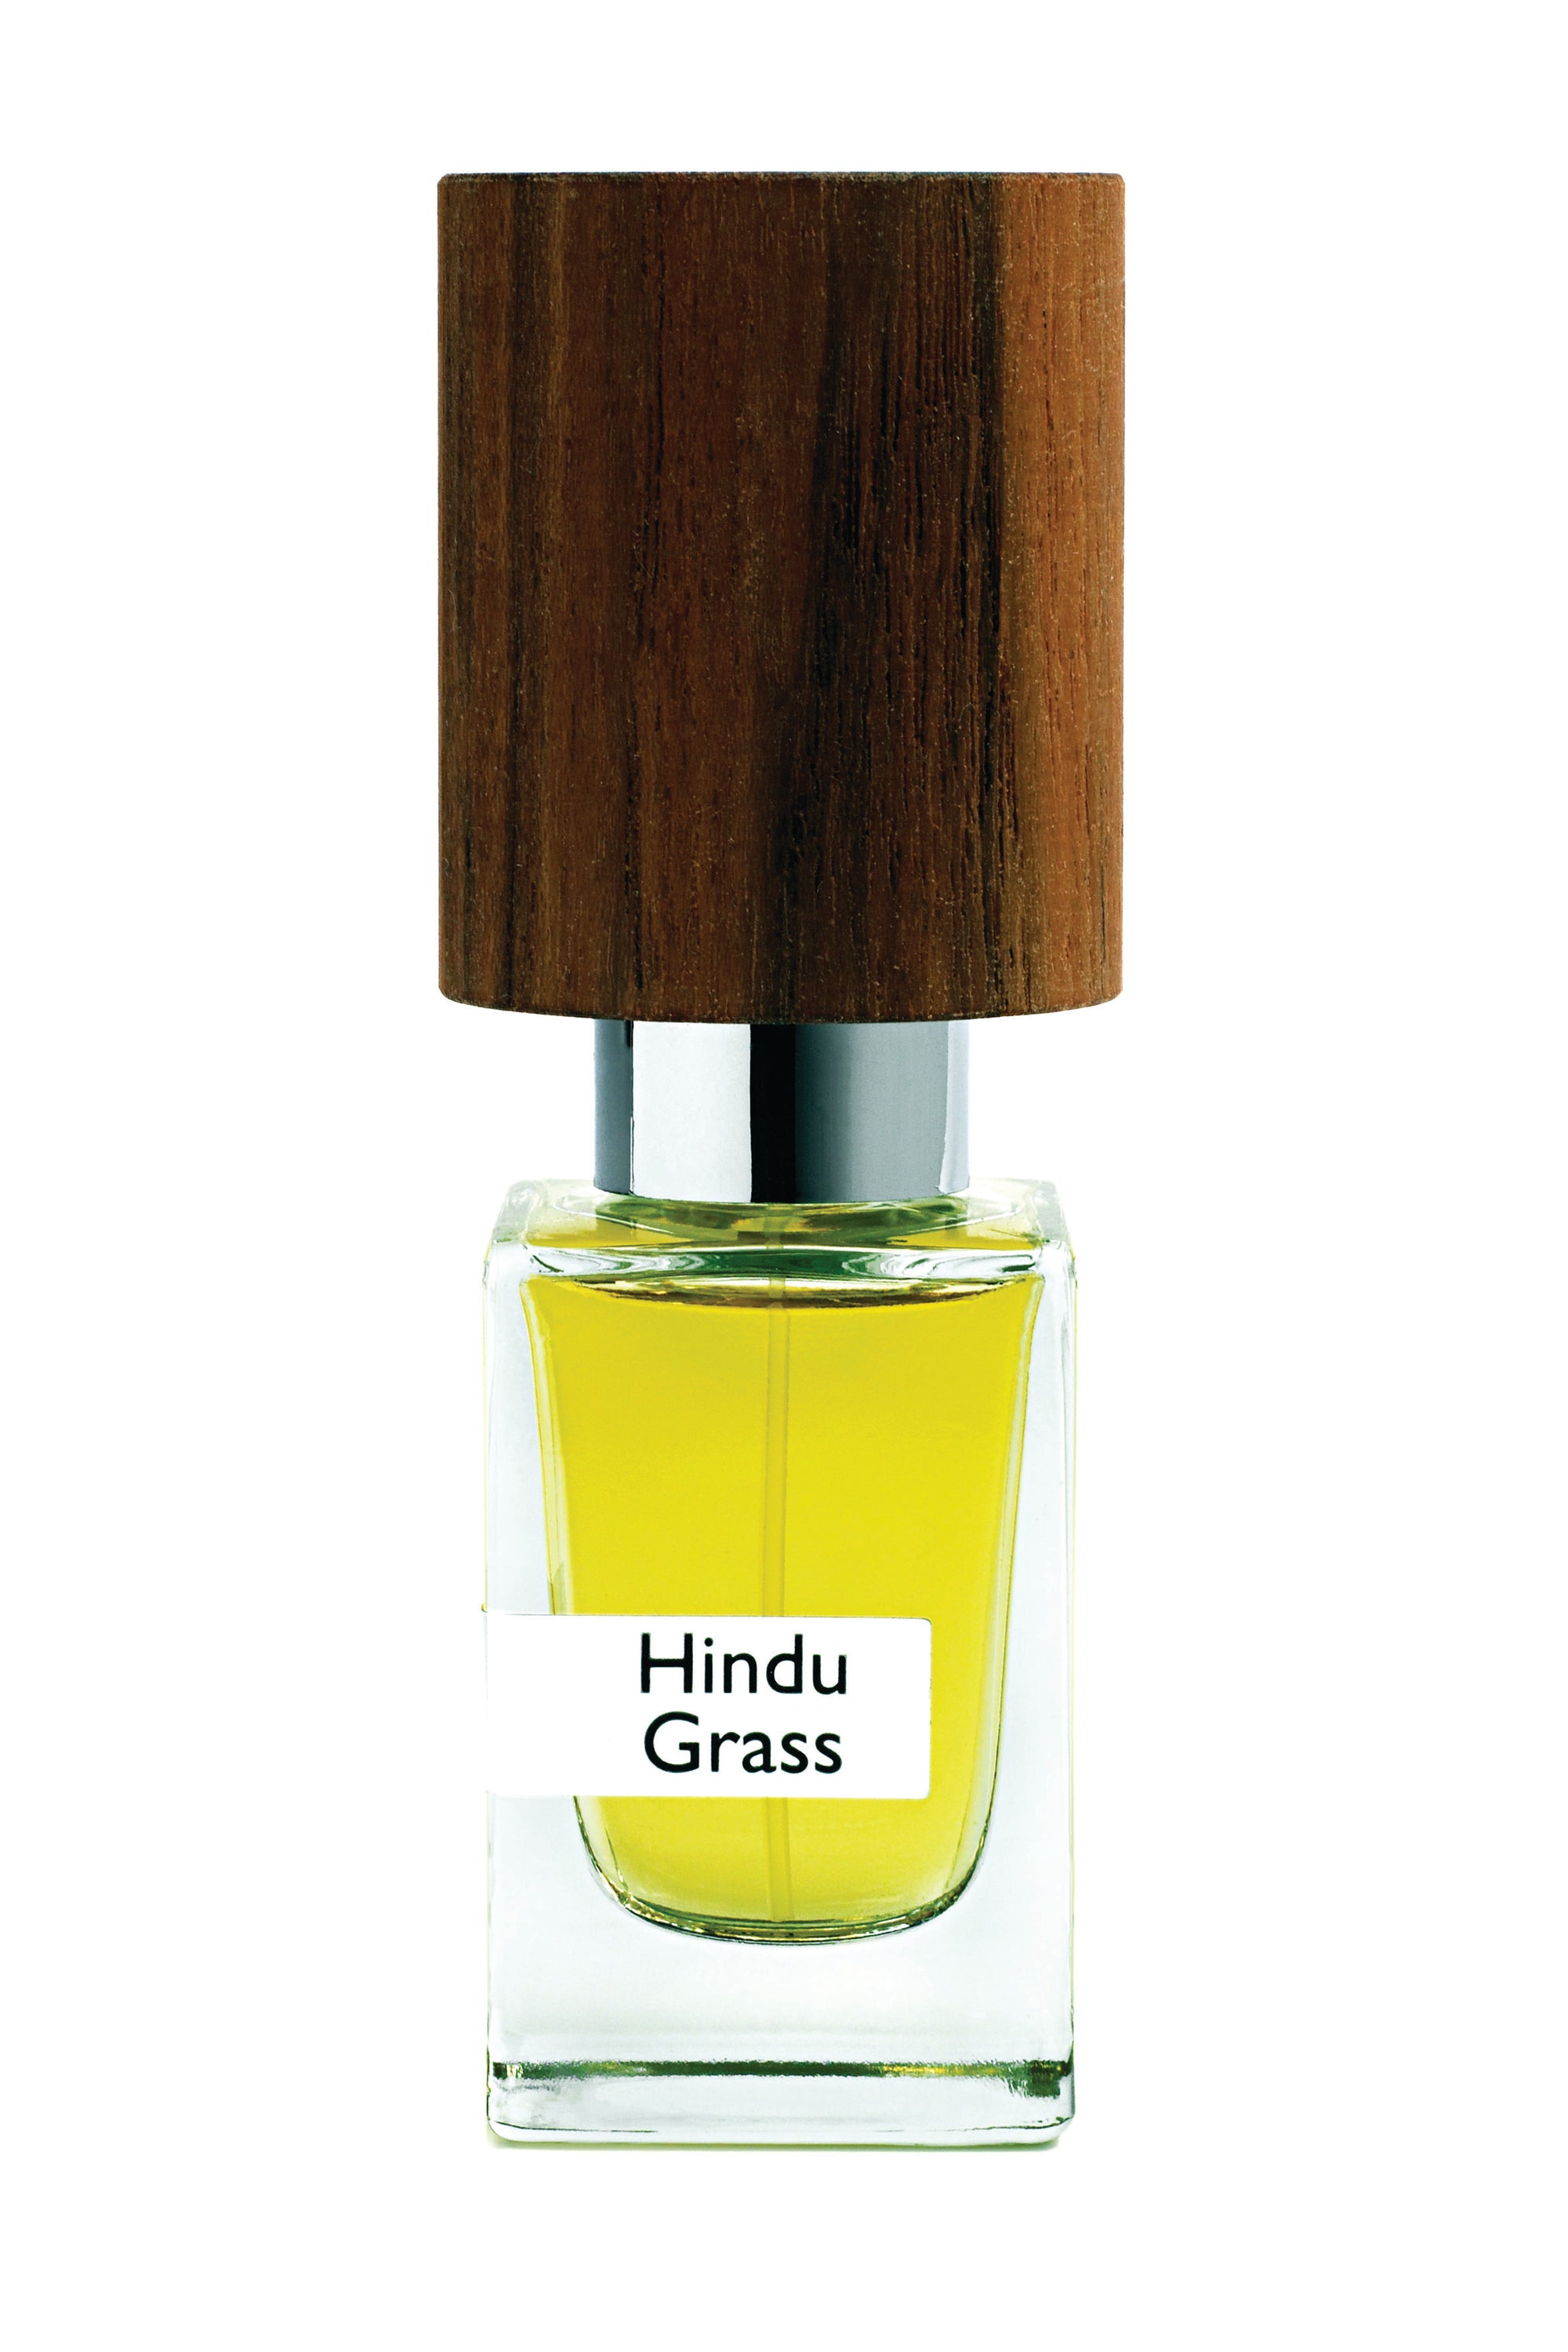 Hindu Grass